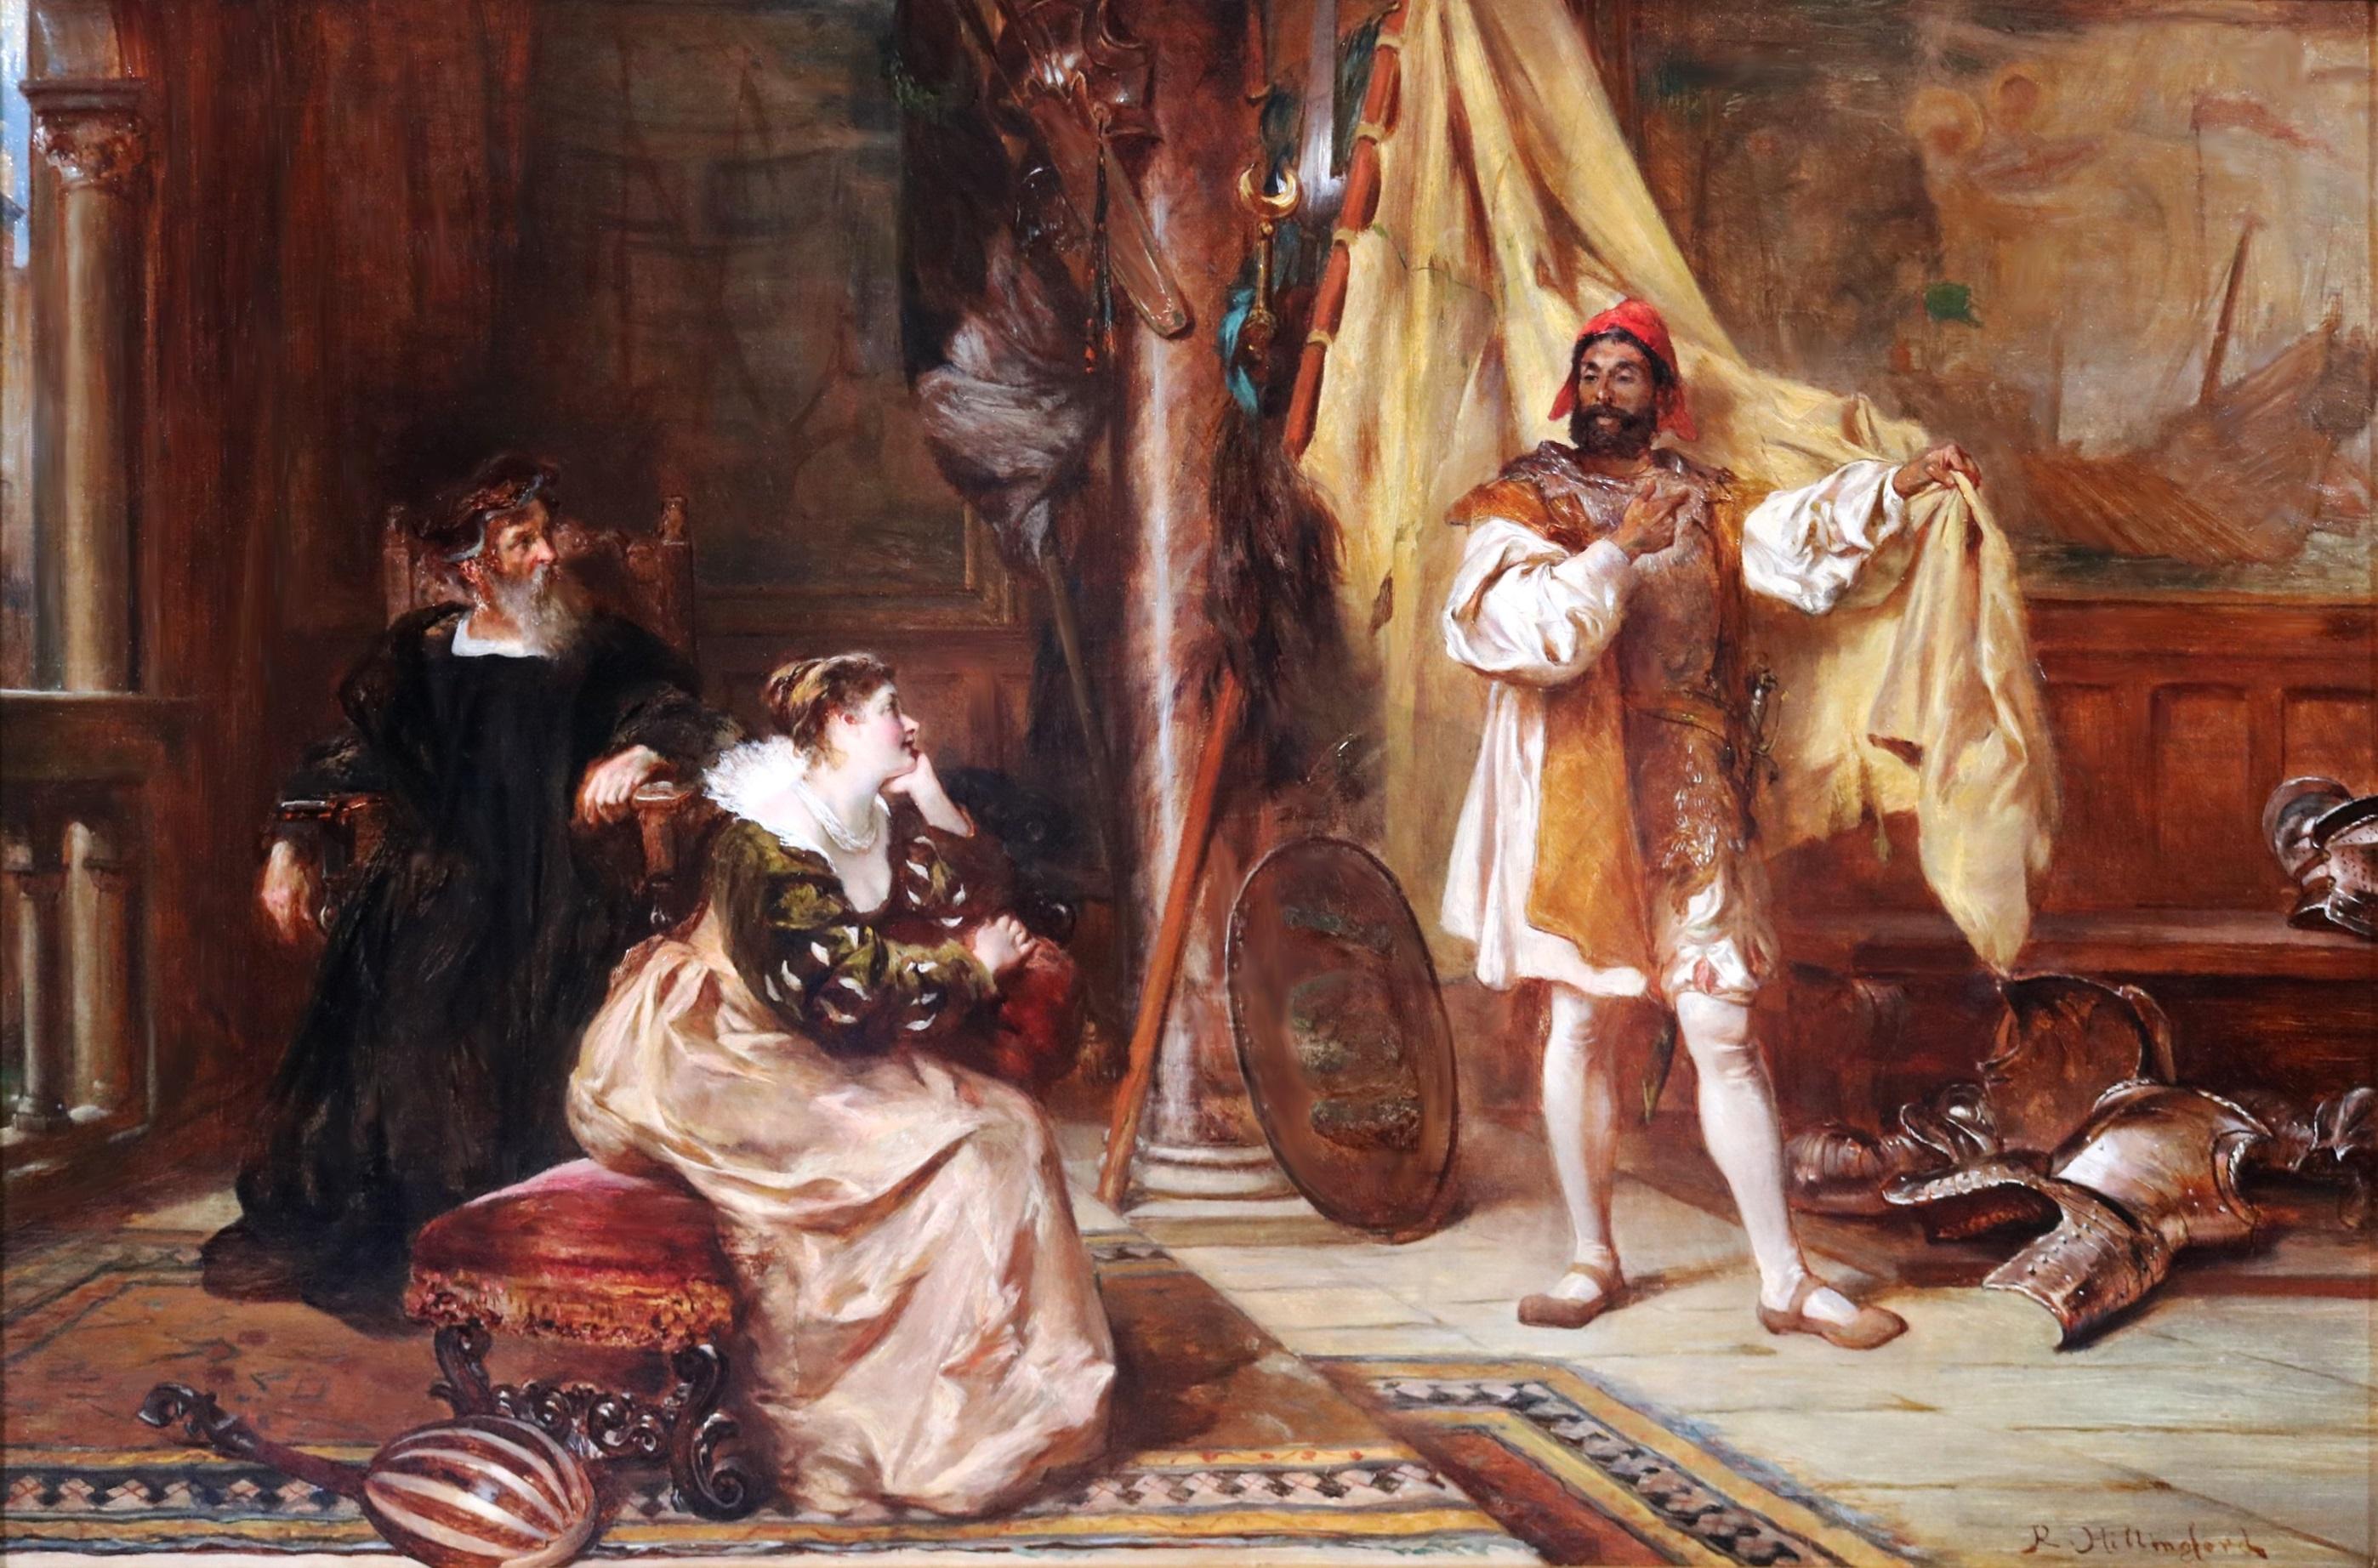 Othello & Desdemona - Peinture à l'huile du 19ème siècle de la pièce de Shakespeare Venise Italie - Painting de Robert Alexander Hillingford